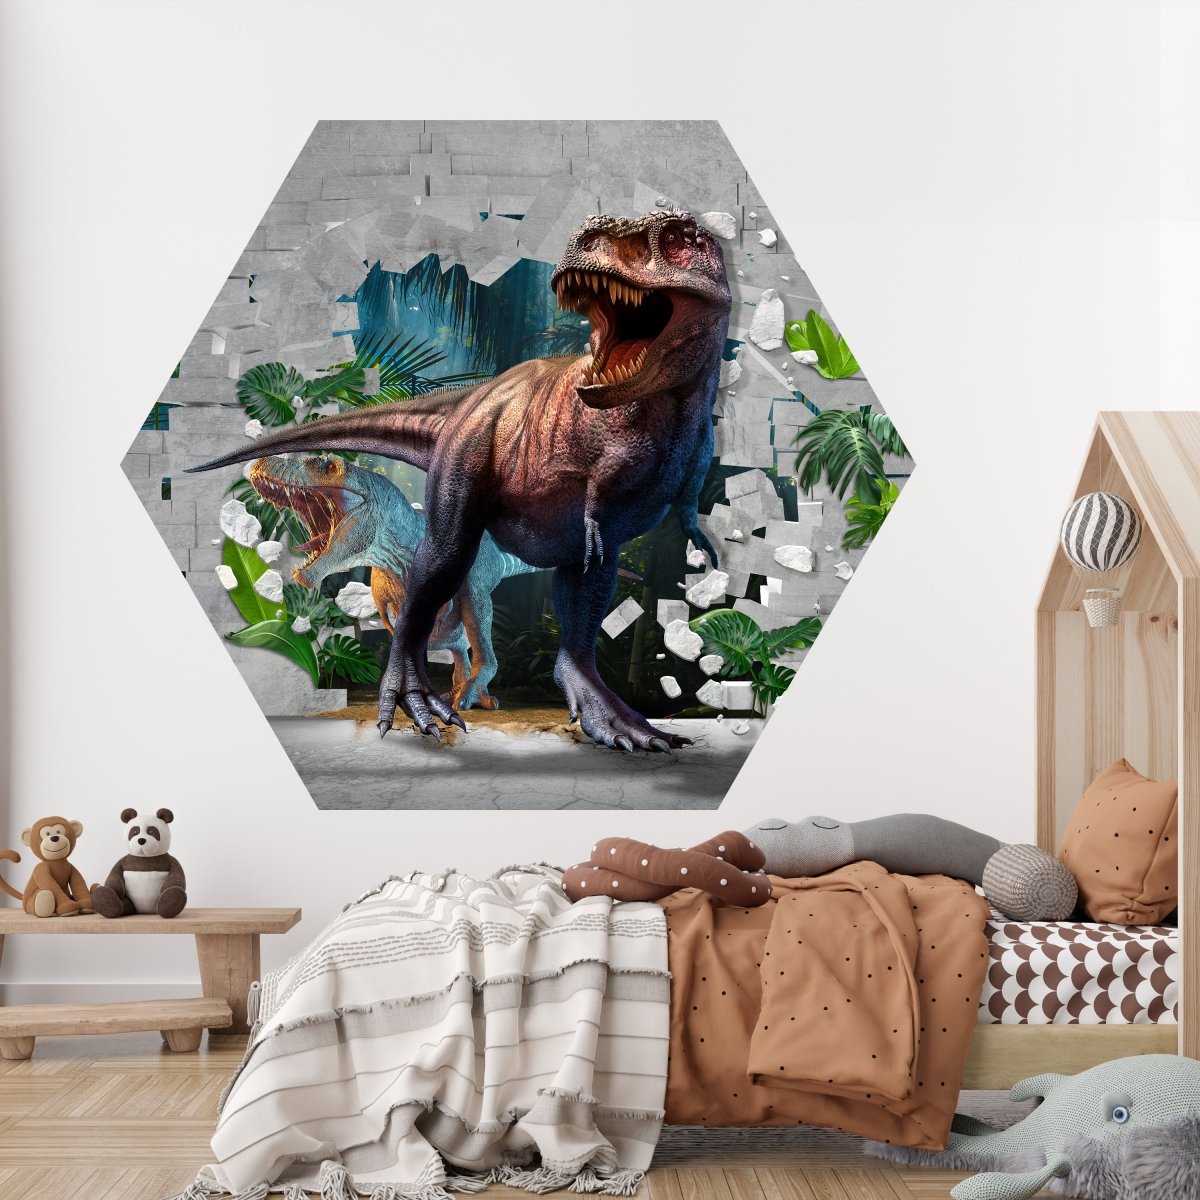 Hexagon-Fototapete Wanddurchbruch mit Dinosauriern M0038 - Bild 2